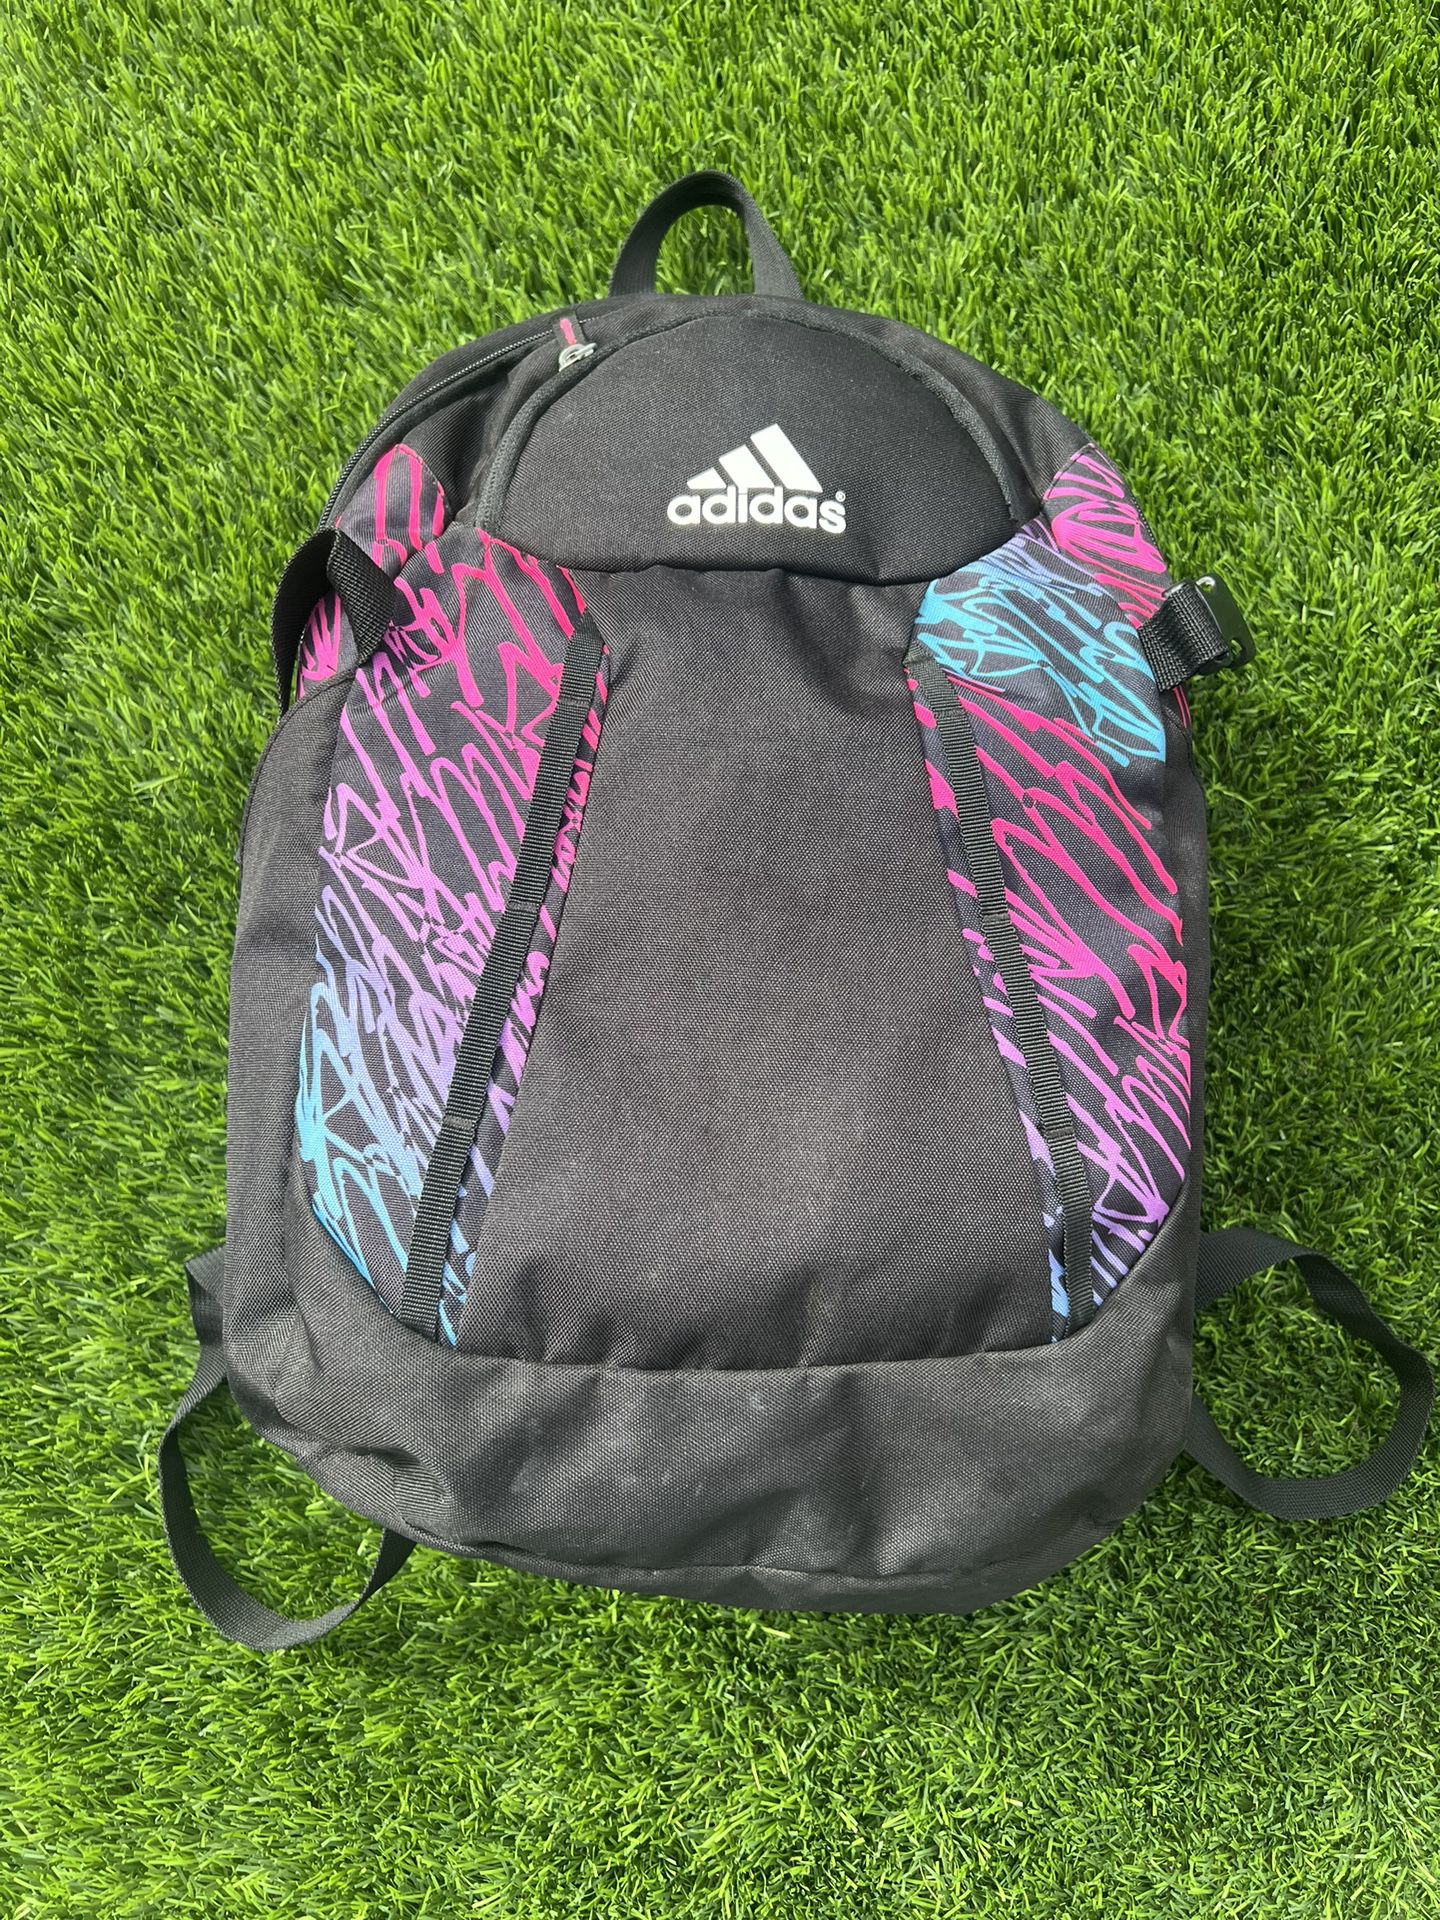 Girls Softball Bag Backpack 